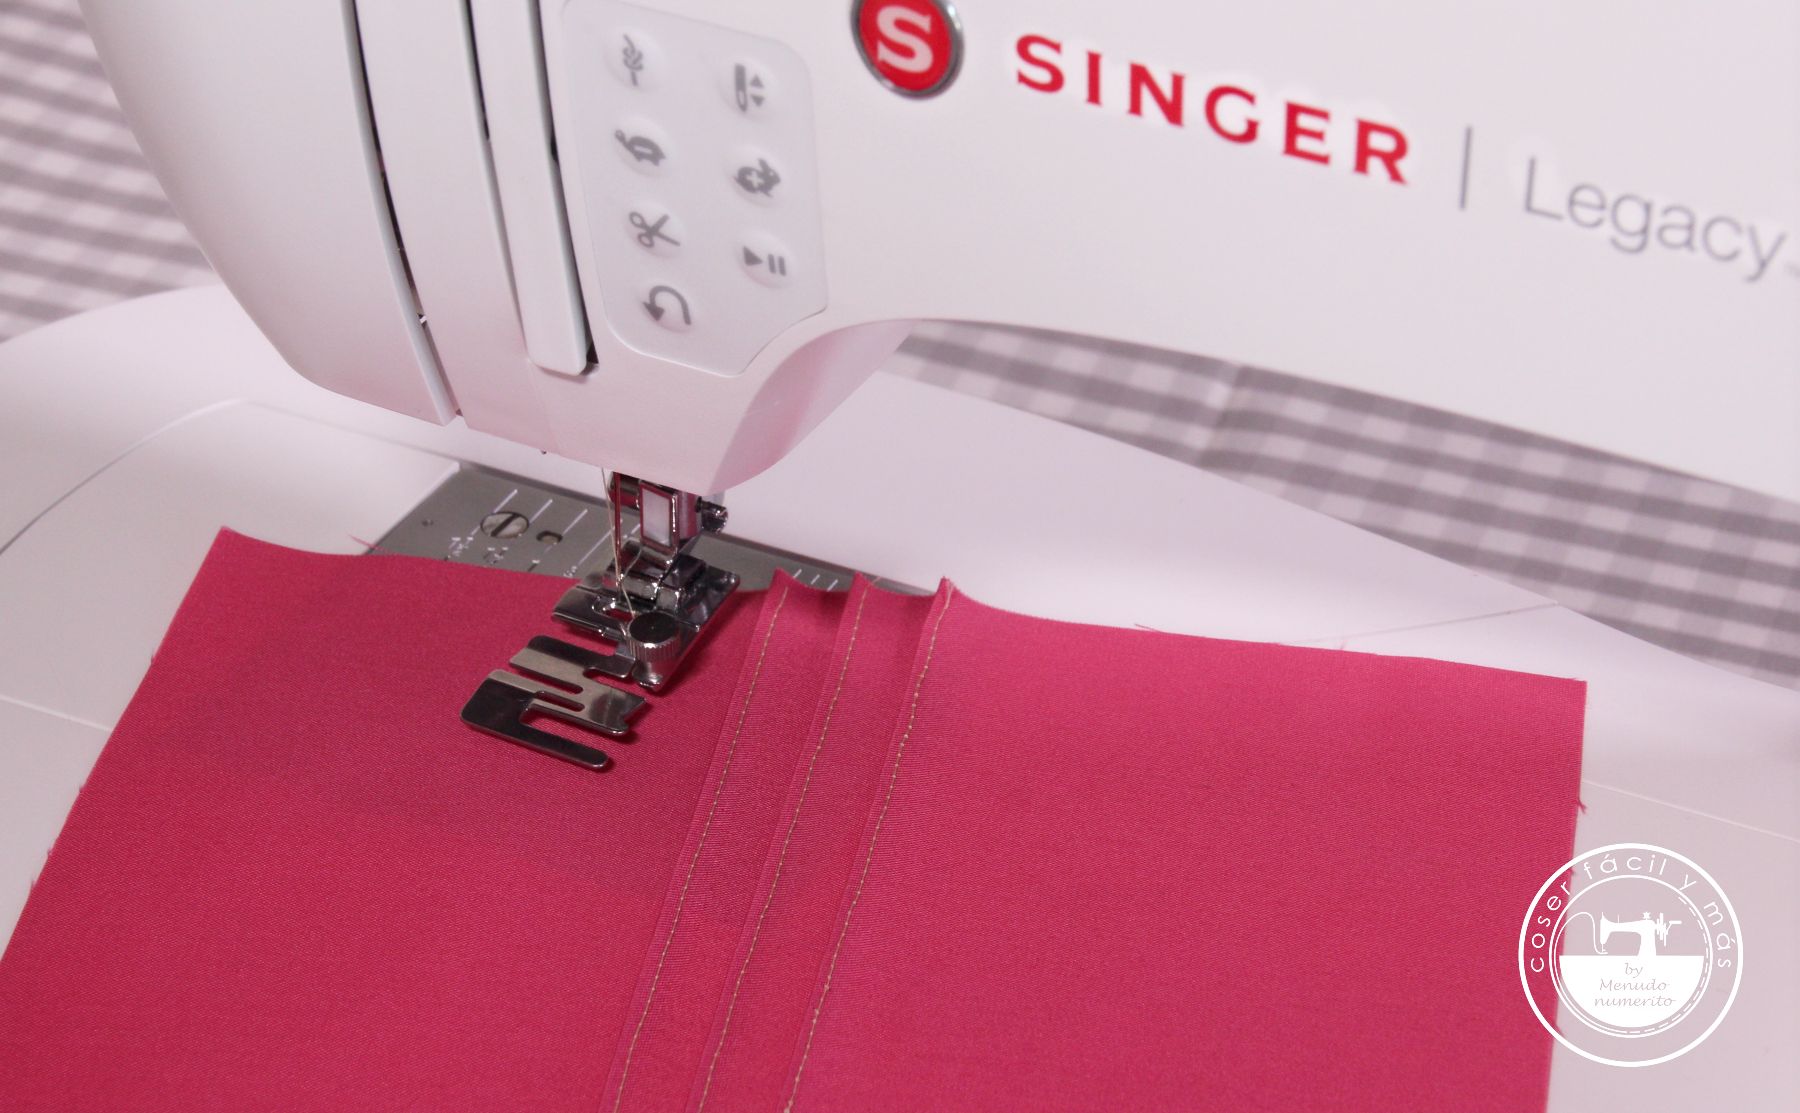 Agujas para coser a máquina - El blog de Coser fácil y más by Menudo  numerito